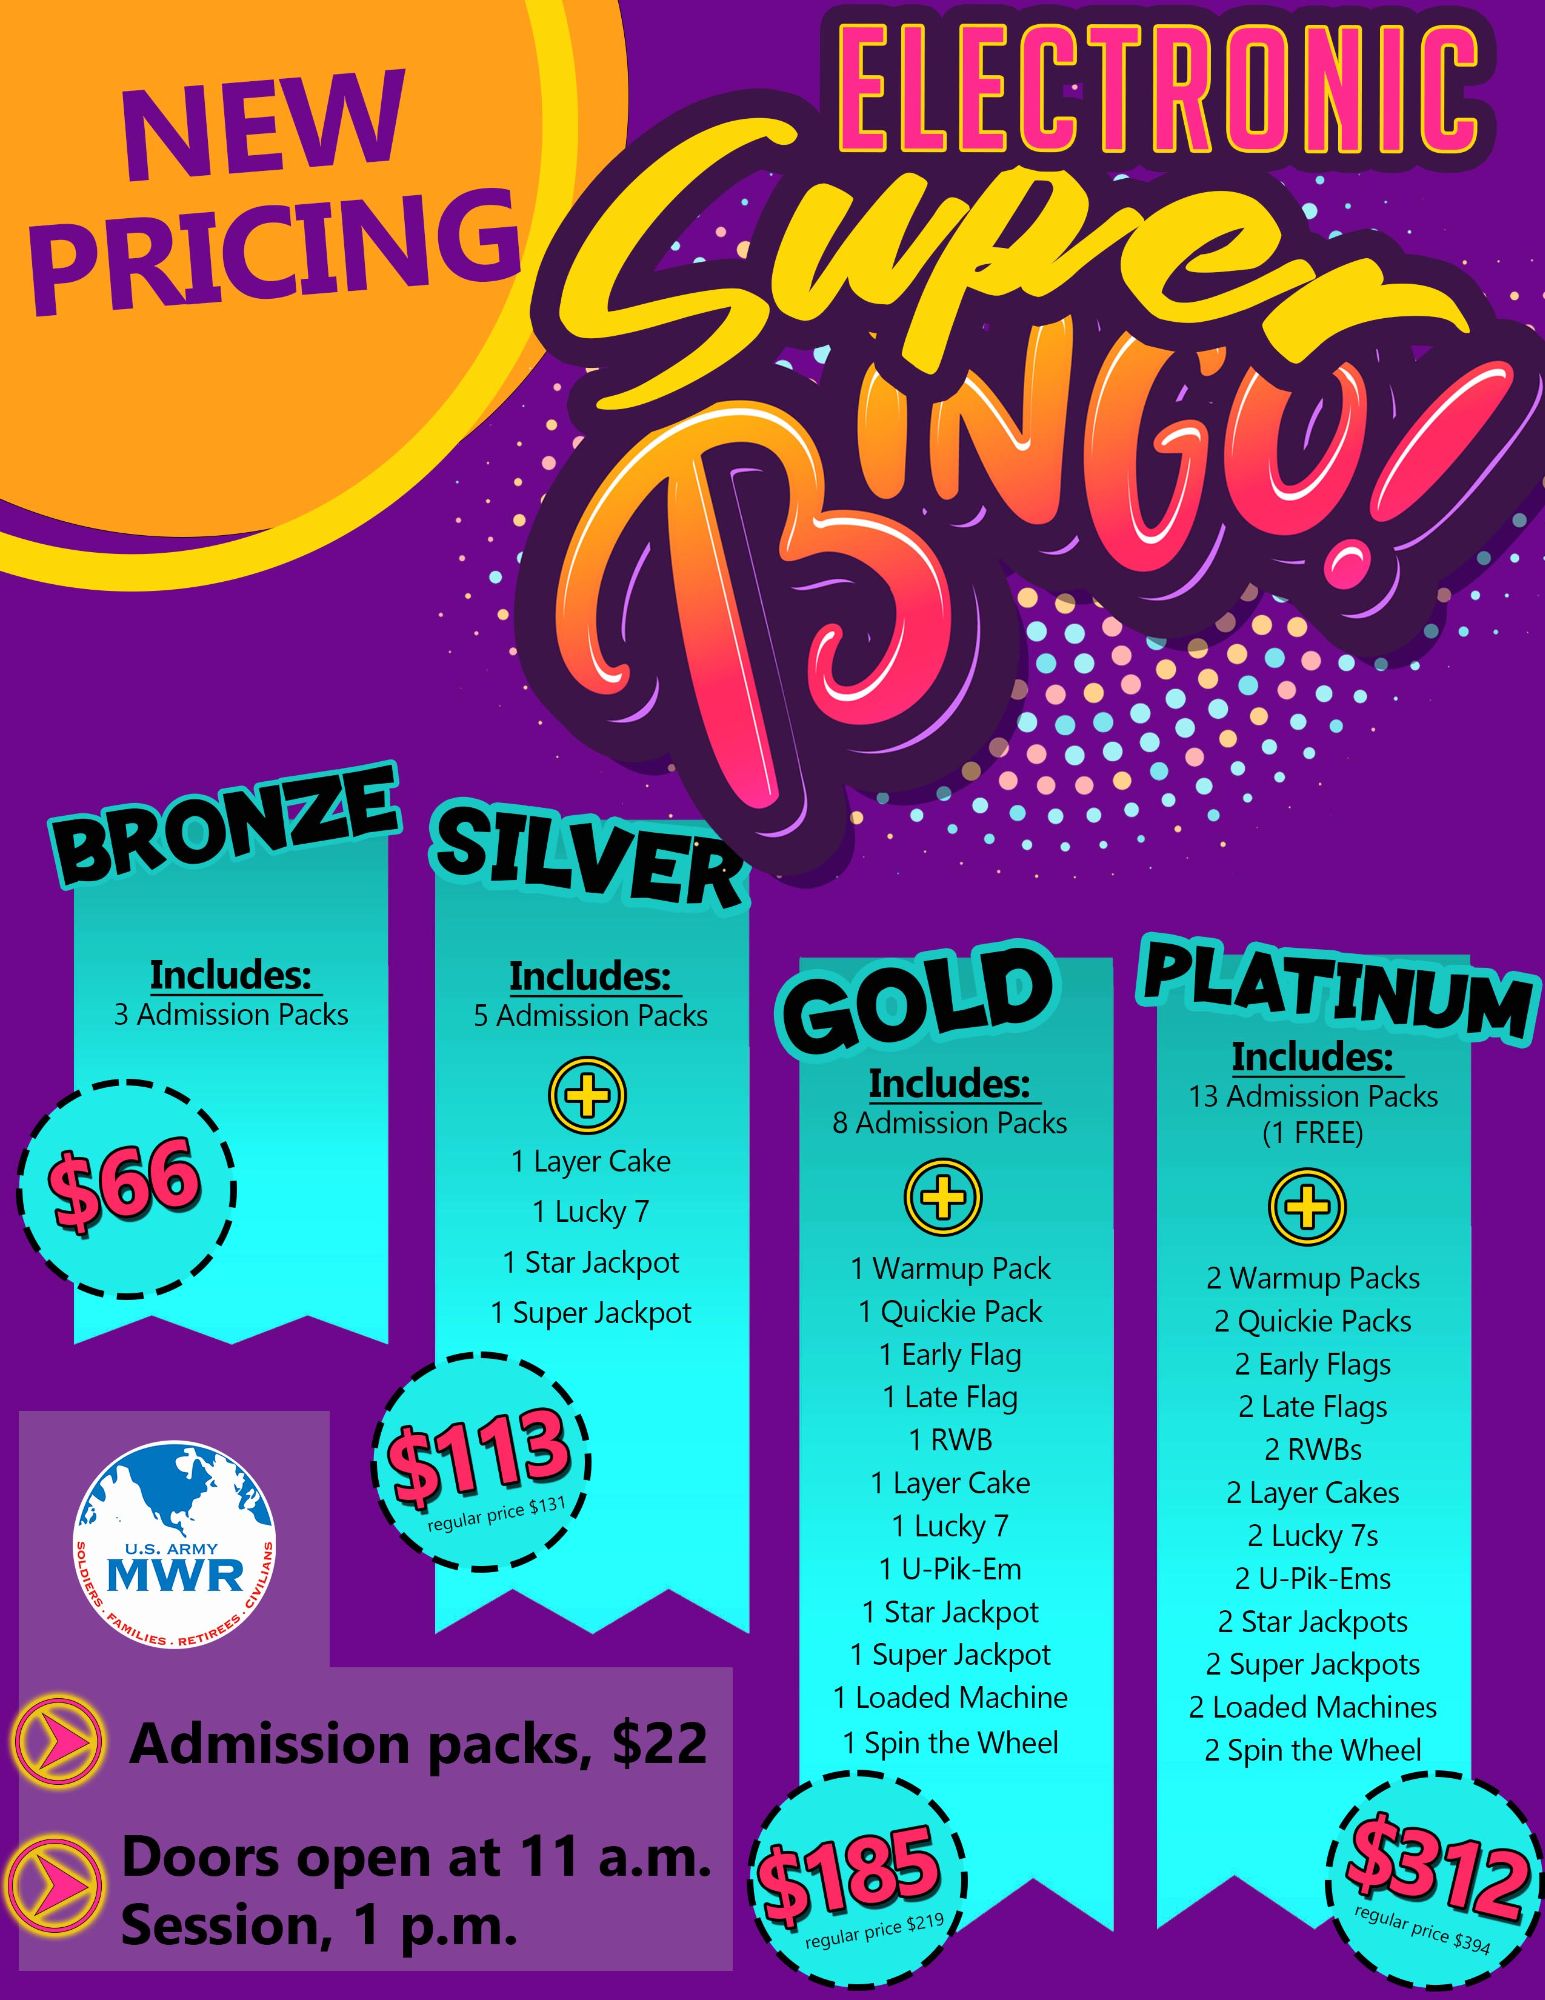 moore_Super Bingo Electonic NEW Prices.jpg